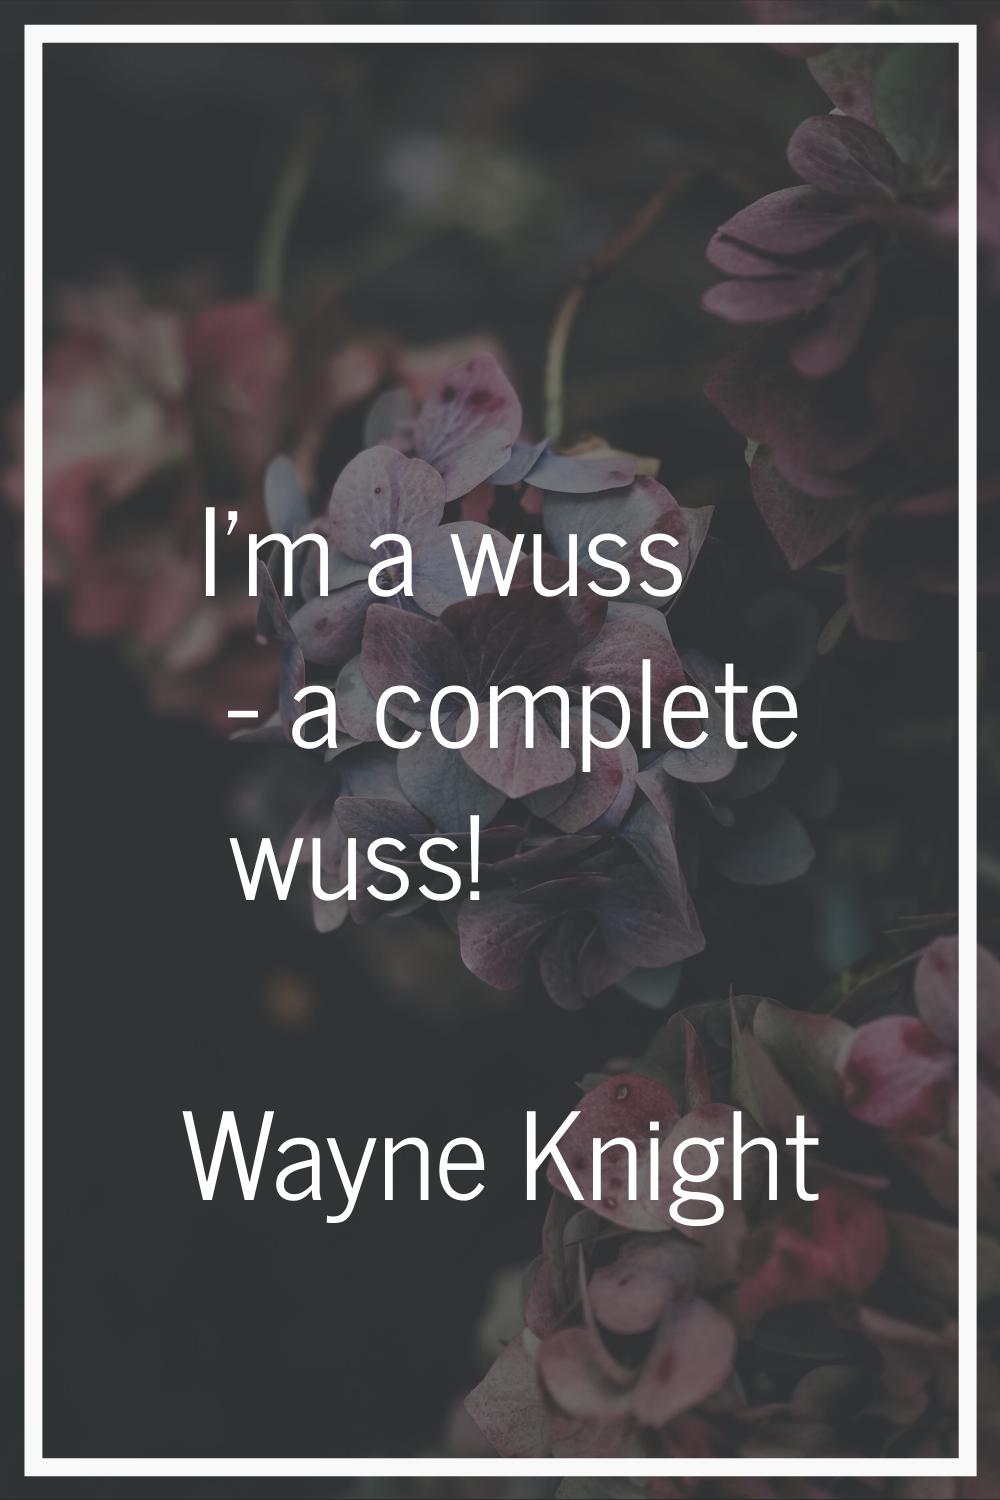 I'm a wuss - a complete wuss!